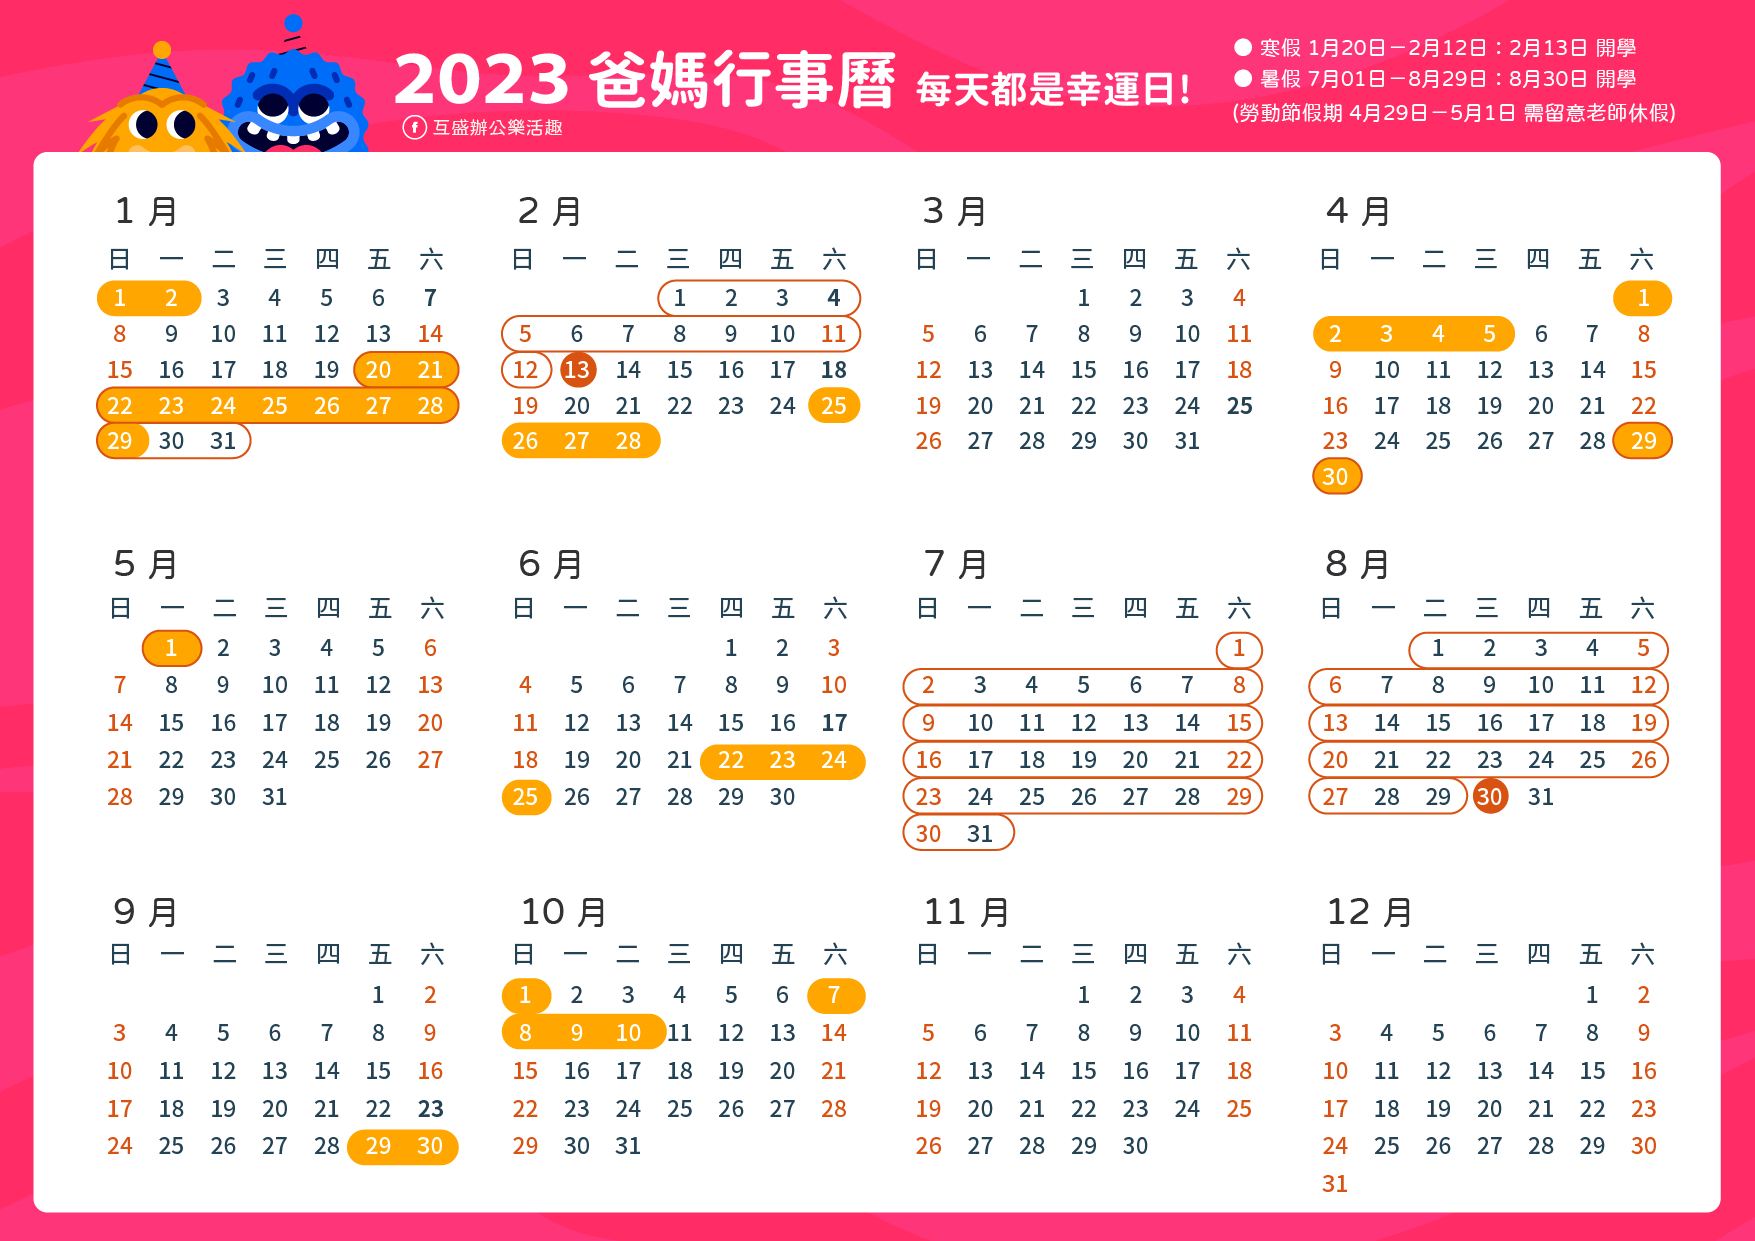 2023行事曆下載_2023學校行事曆